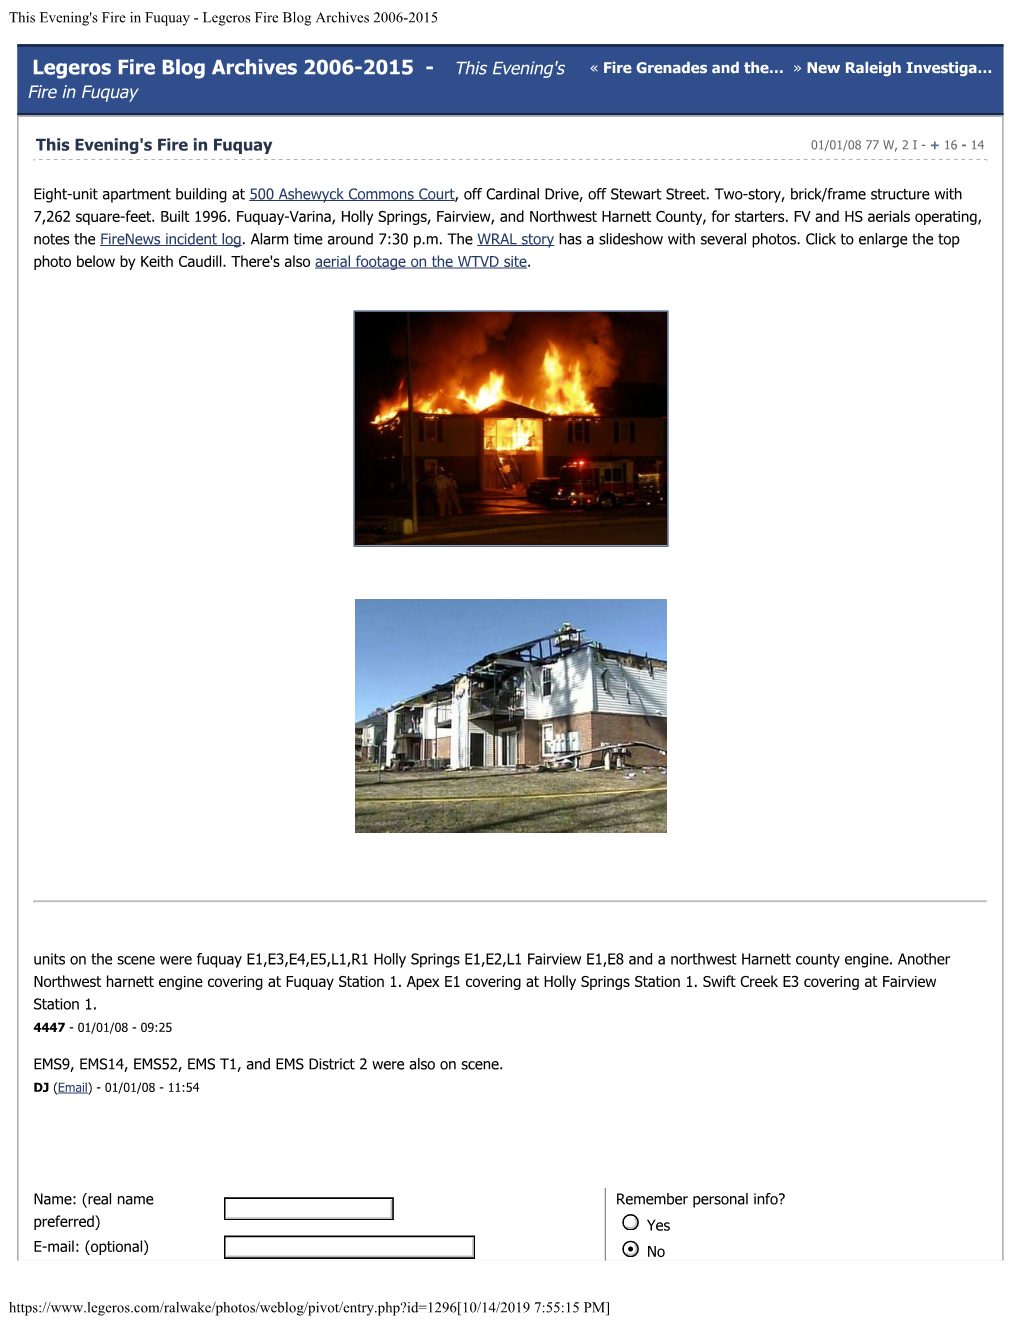 Legeros Fire Blog Archives 2006-2015